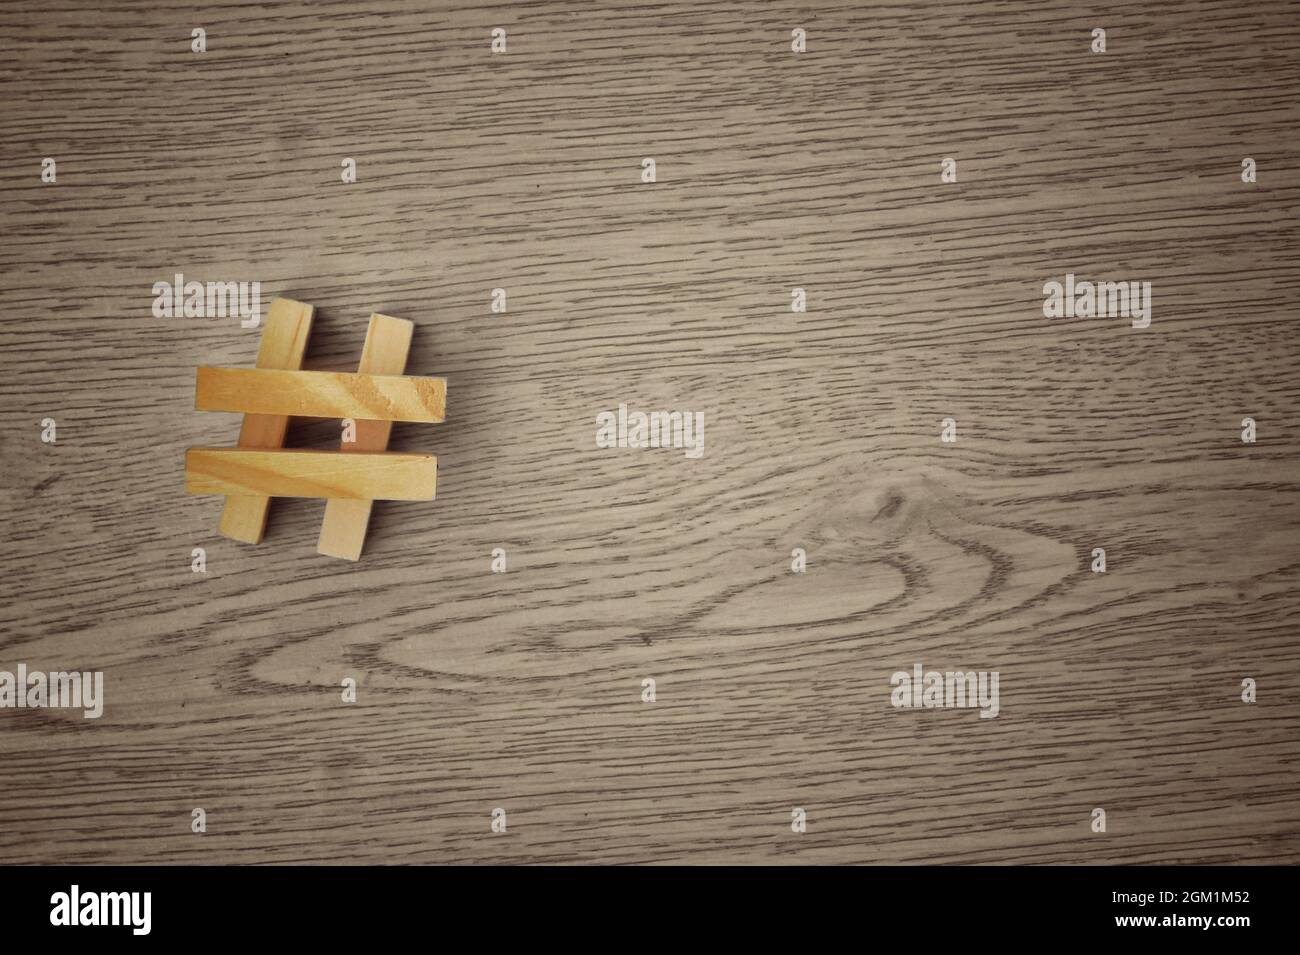 Symbole hashtag signe fait avec une pile de carreaux de bois. Copier l'espace pour le texte Banque D'Images